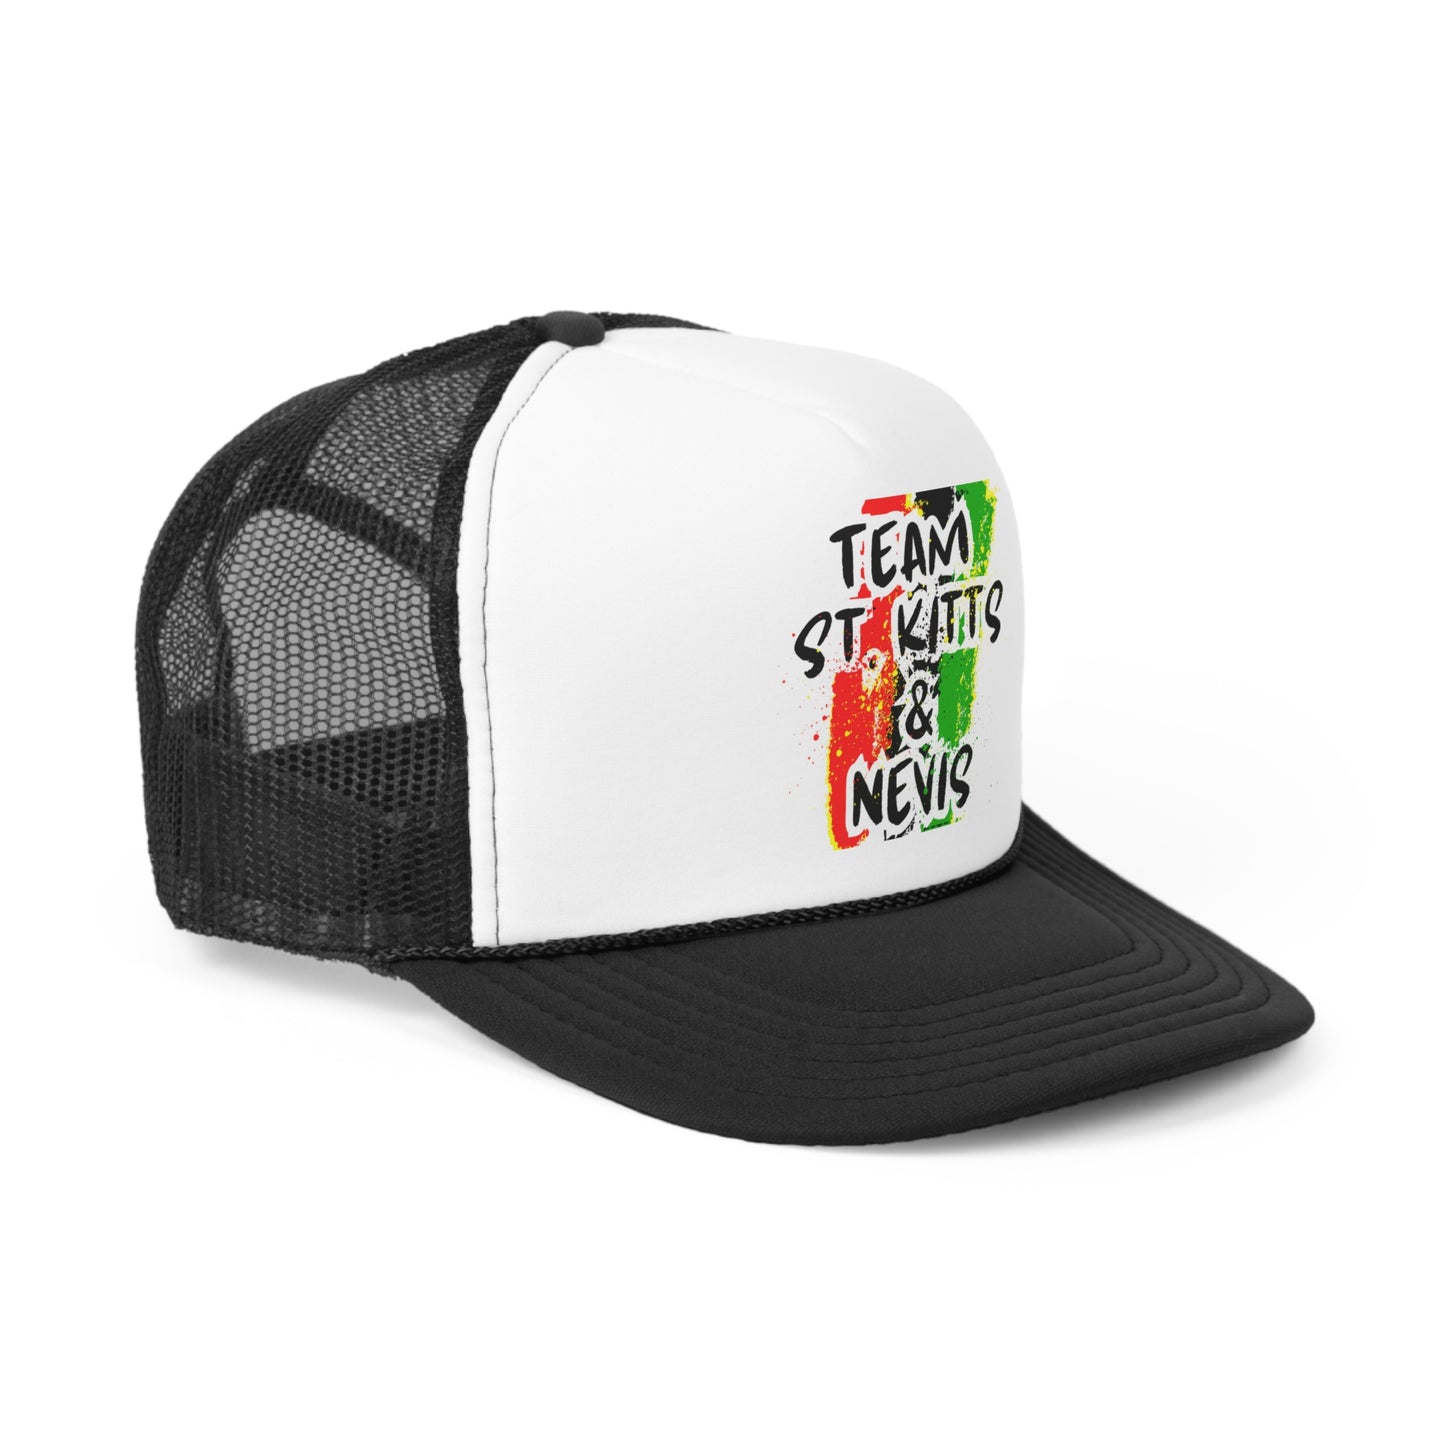 Team St.Kitts & Nevis Trucker Caps